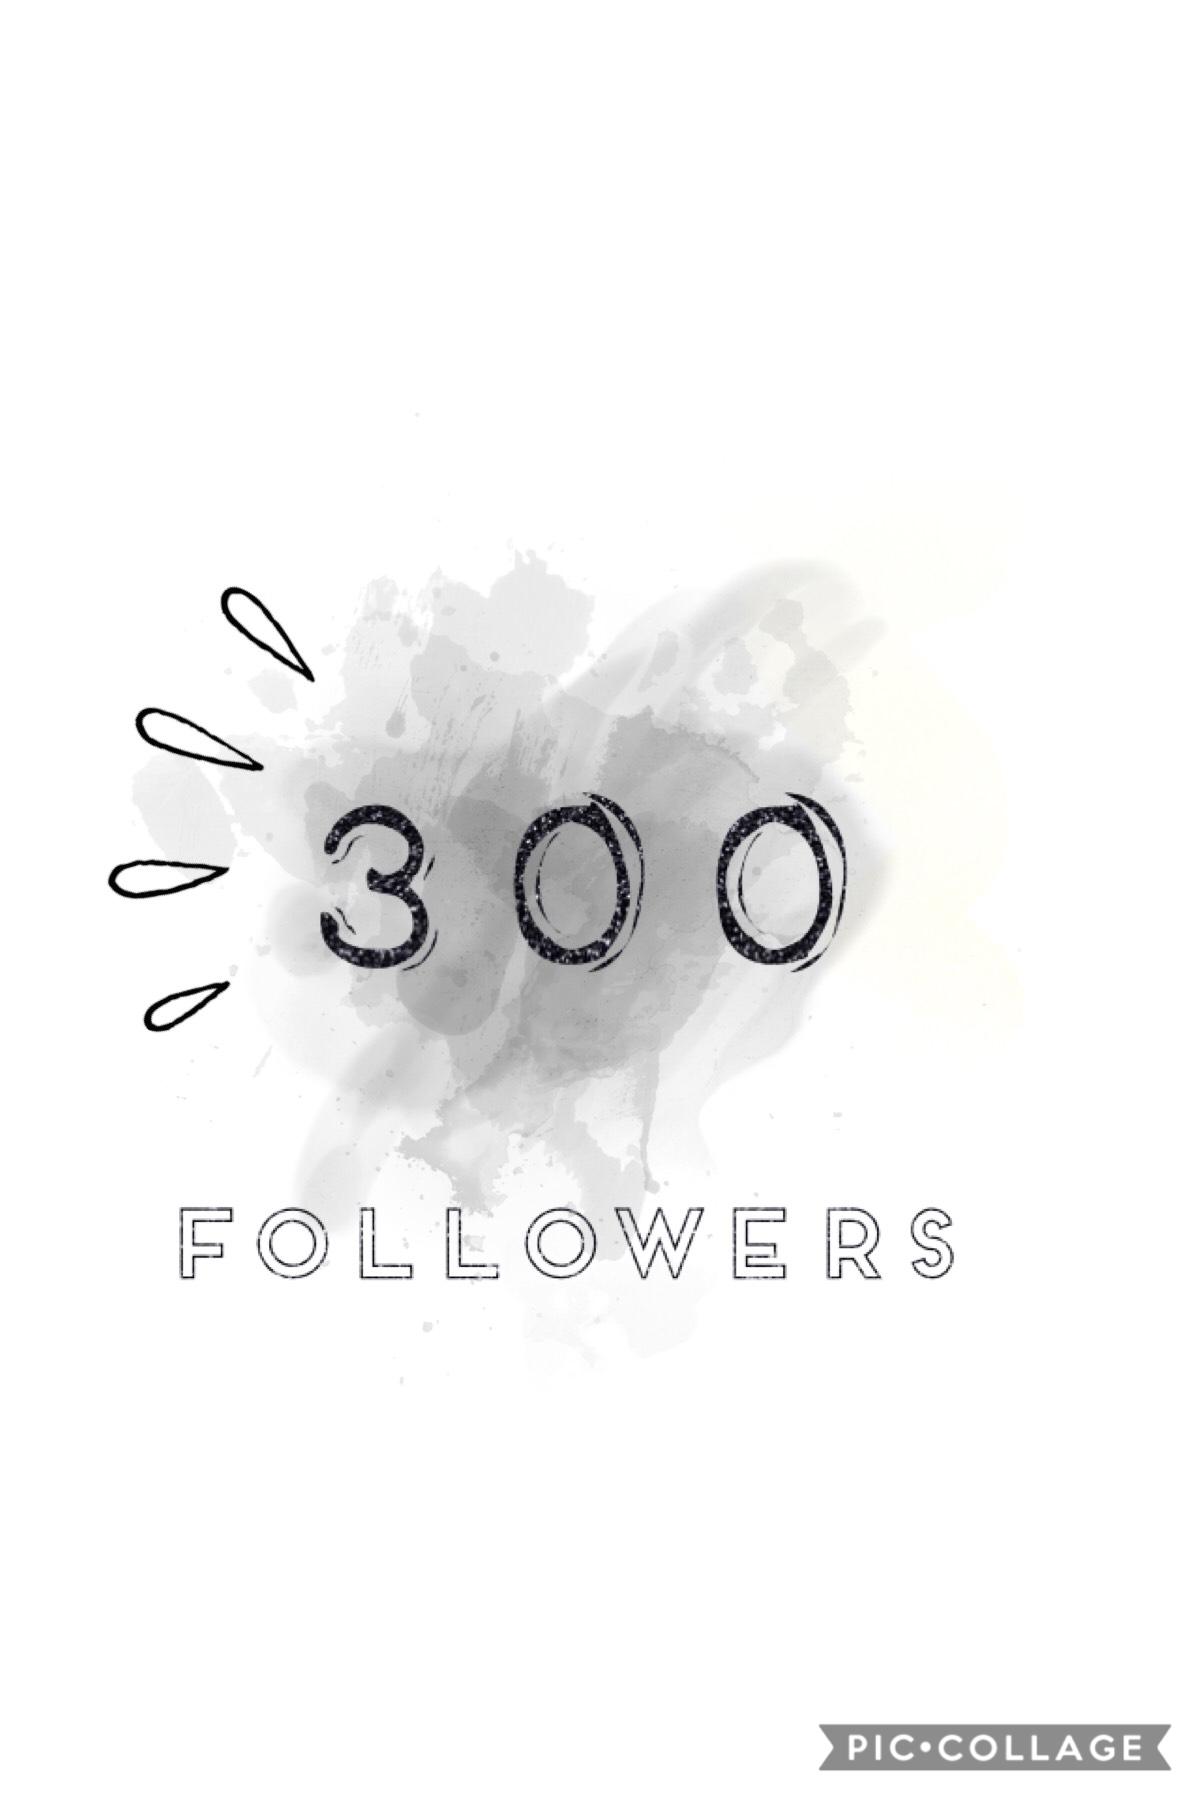 Thanks for three hundred!👍